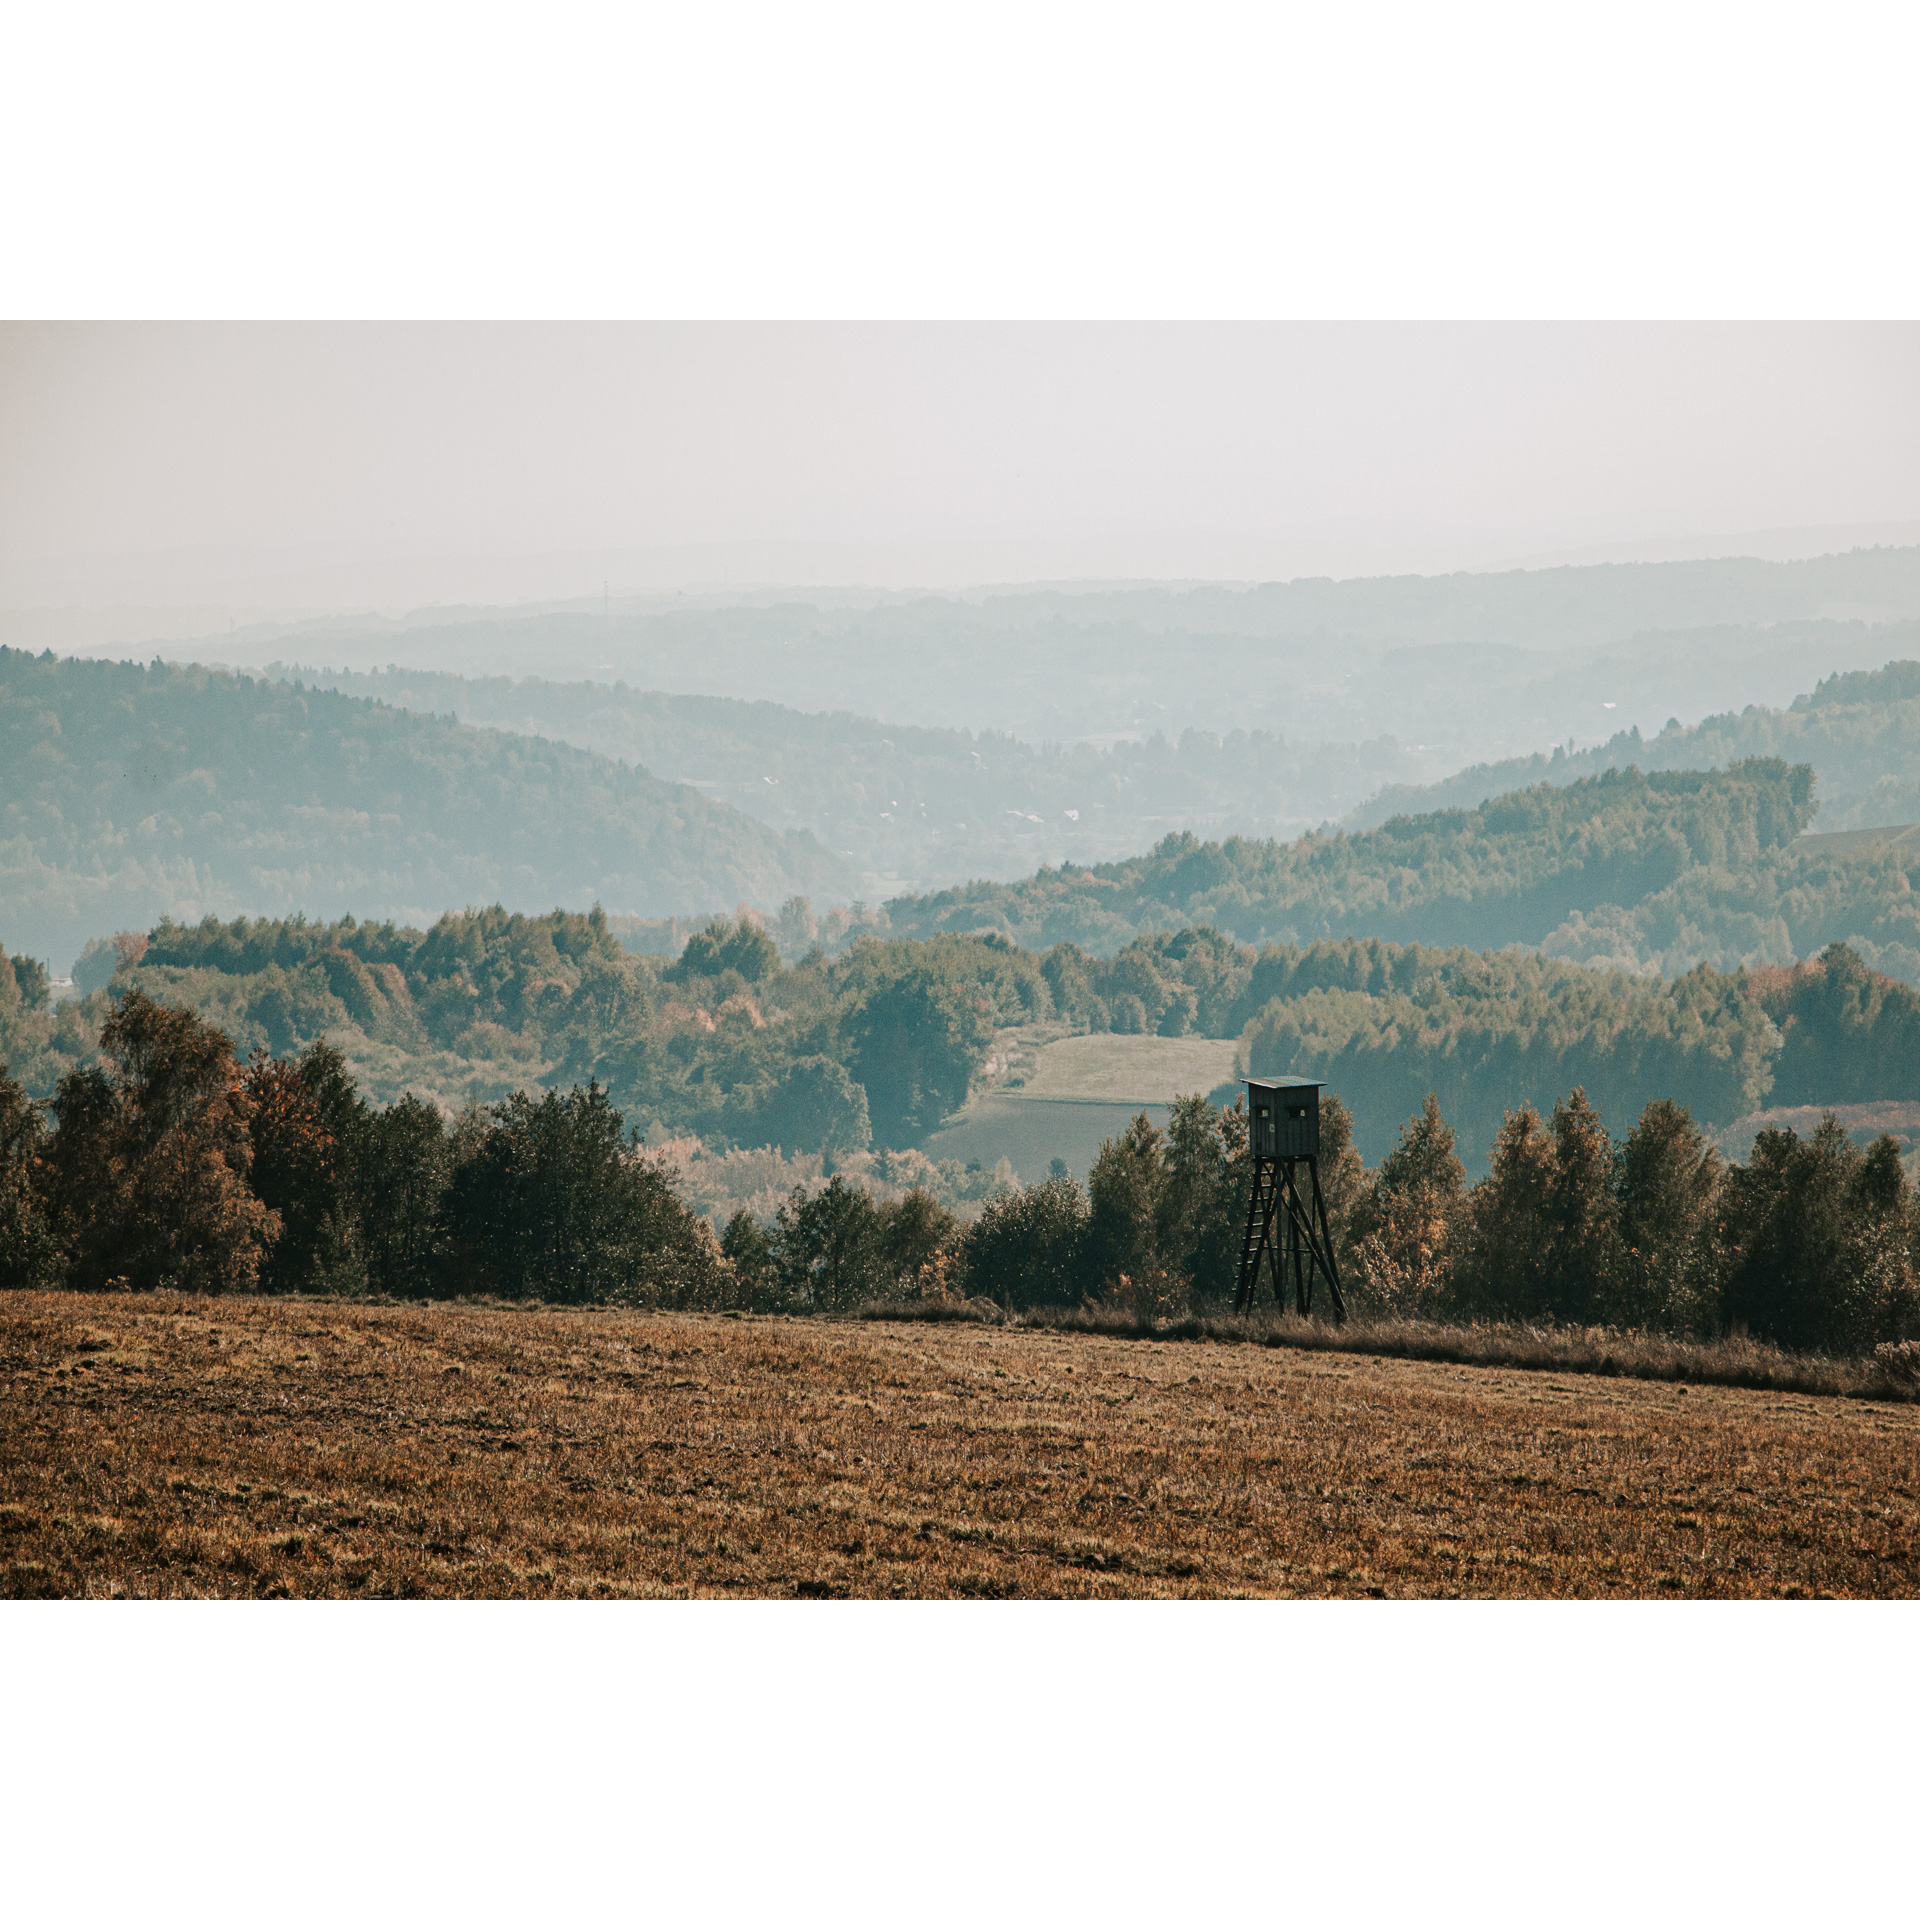 Łąka z brązową trawą z widokiem na zalesione wzgórza i mgliste niebo, w tle drzewa i drewniana ambona obserwacyjna 